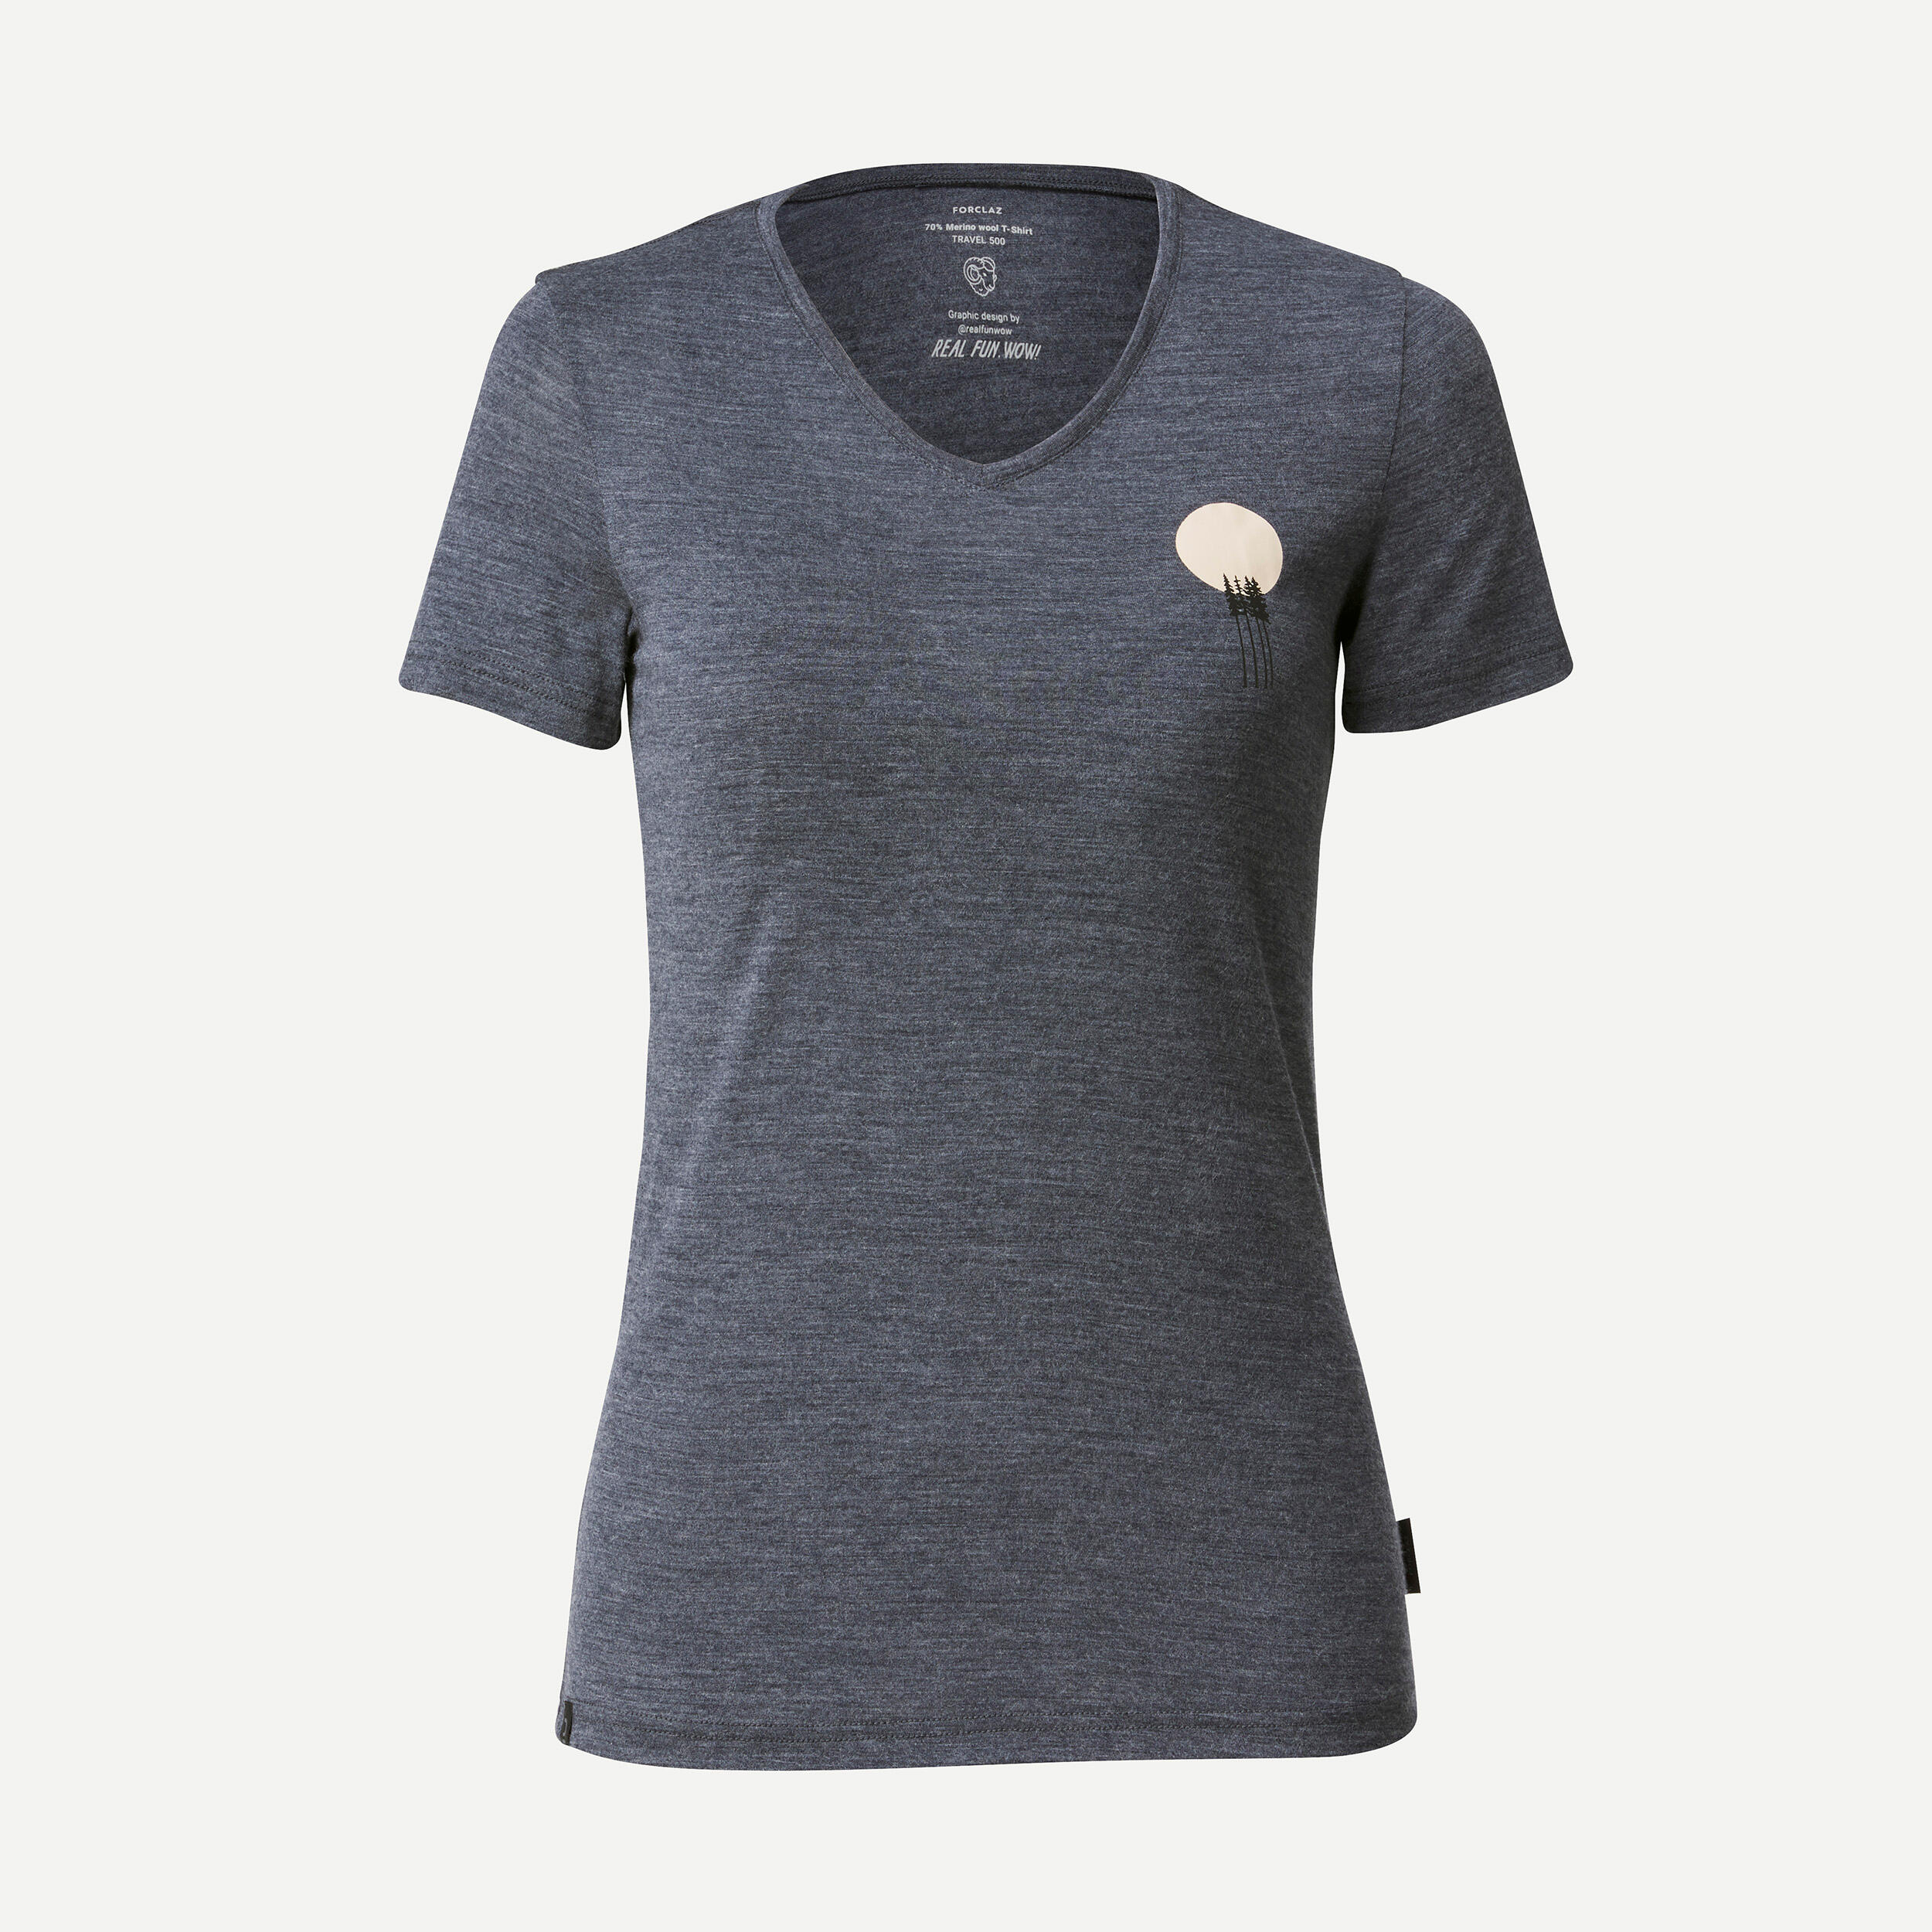 Women's Travel Trekking Merino Wool Short-Sleeved T-Shirt - TRAVEL 500 5/6